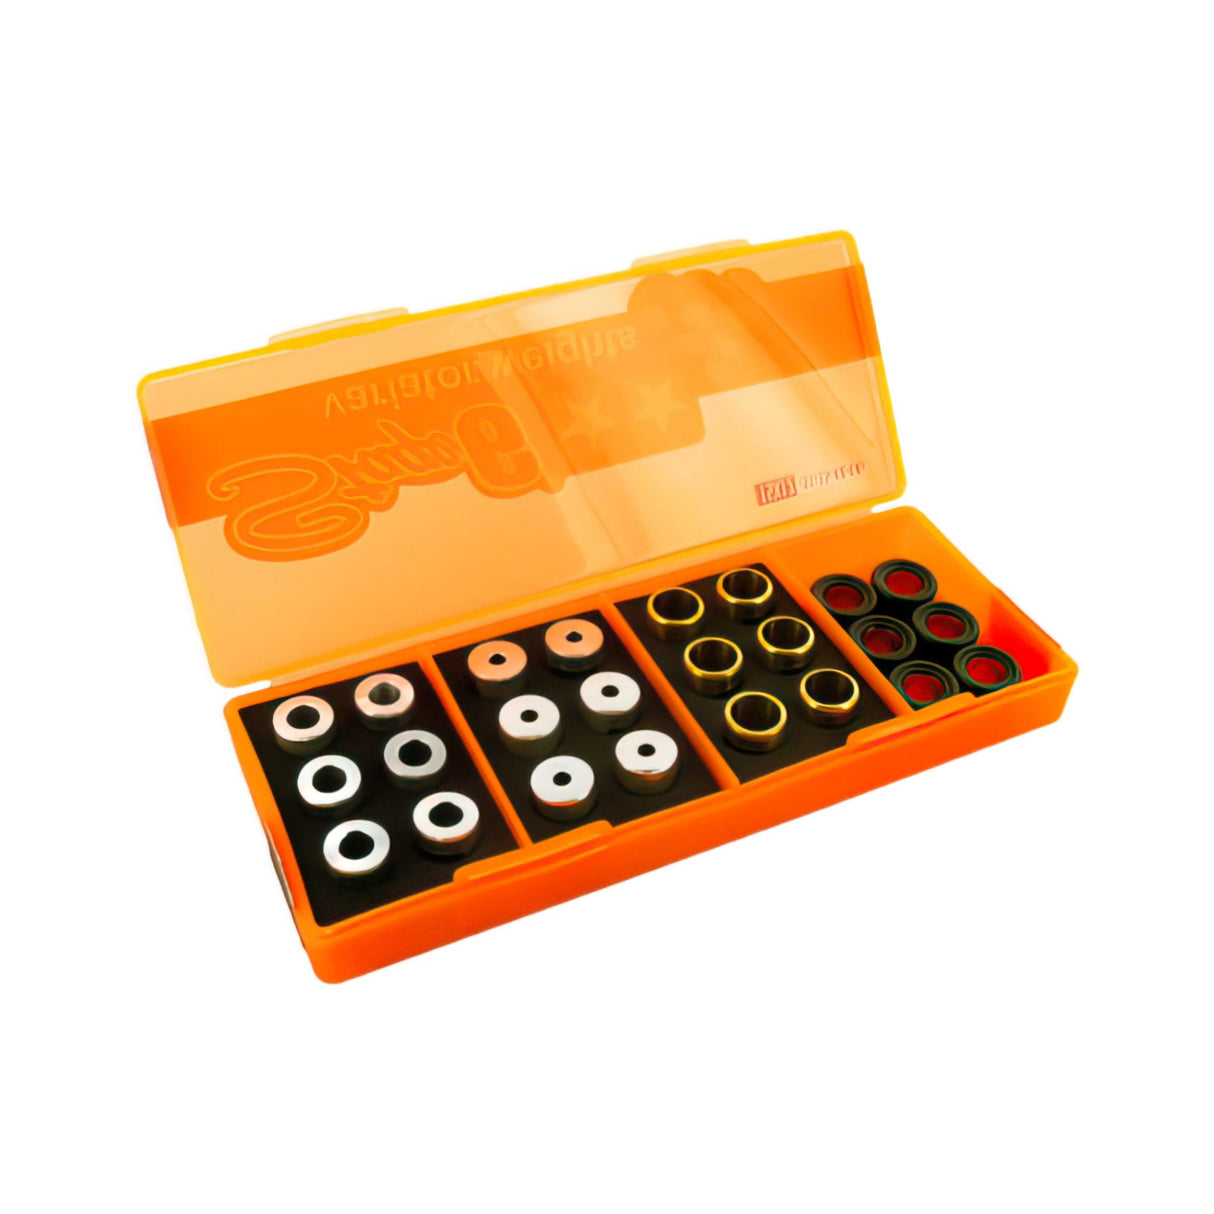 Roller Tuning Kit 19x15.5 (4.00gr - 4.50gr - 5.00gr - 5.50gr)